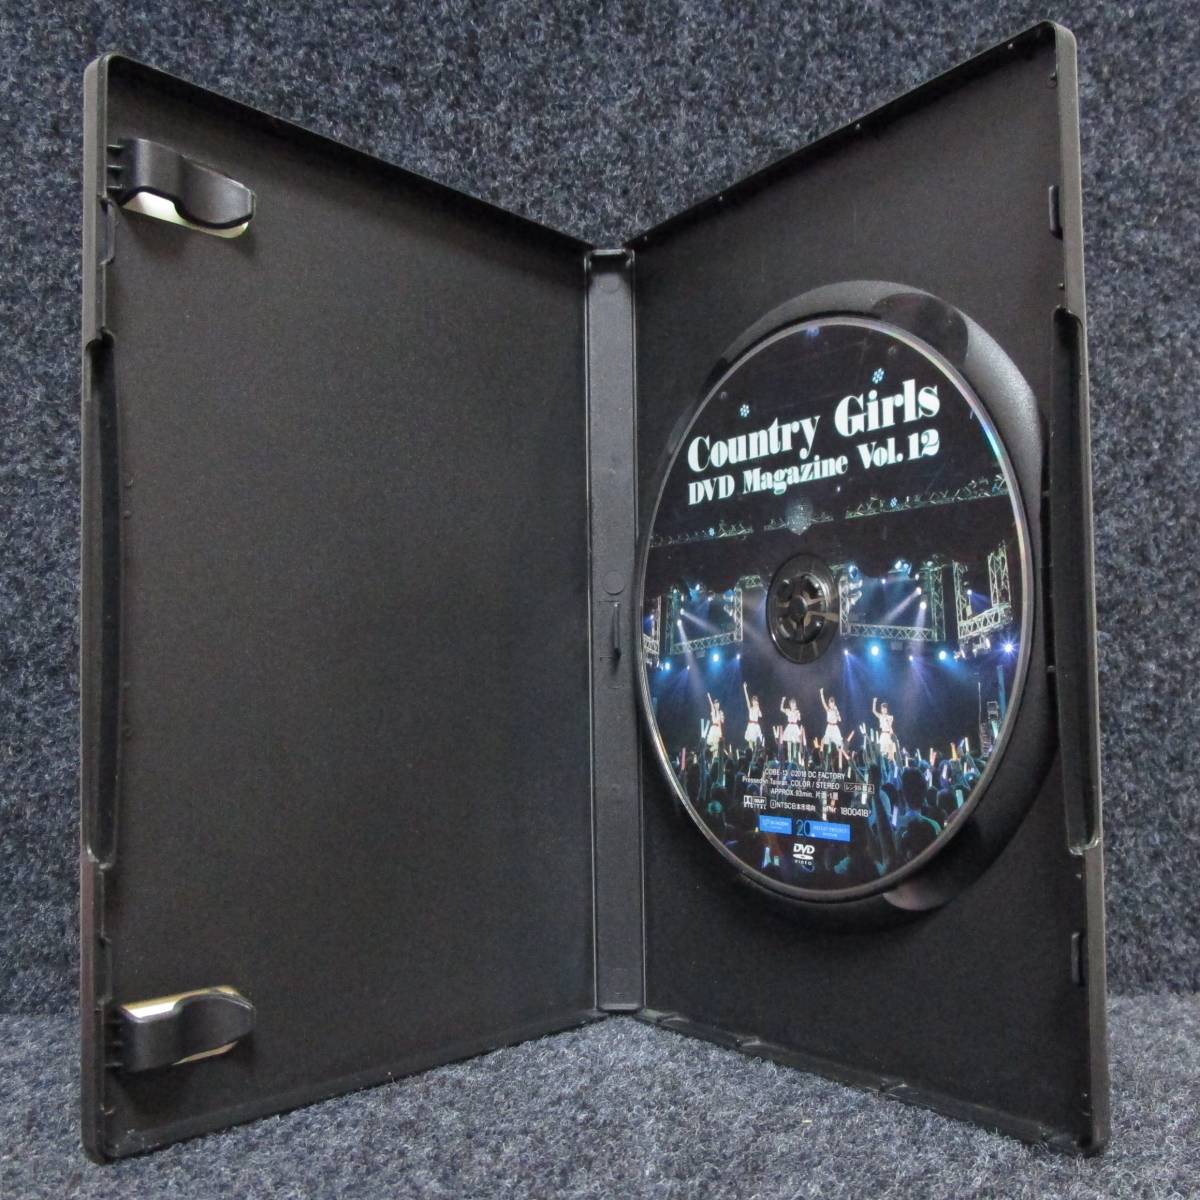 [DVD] カントリーガールズ DVD MAGAZINE VOL.12 DVDマガジン_画像3